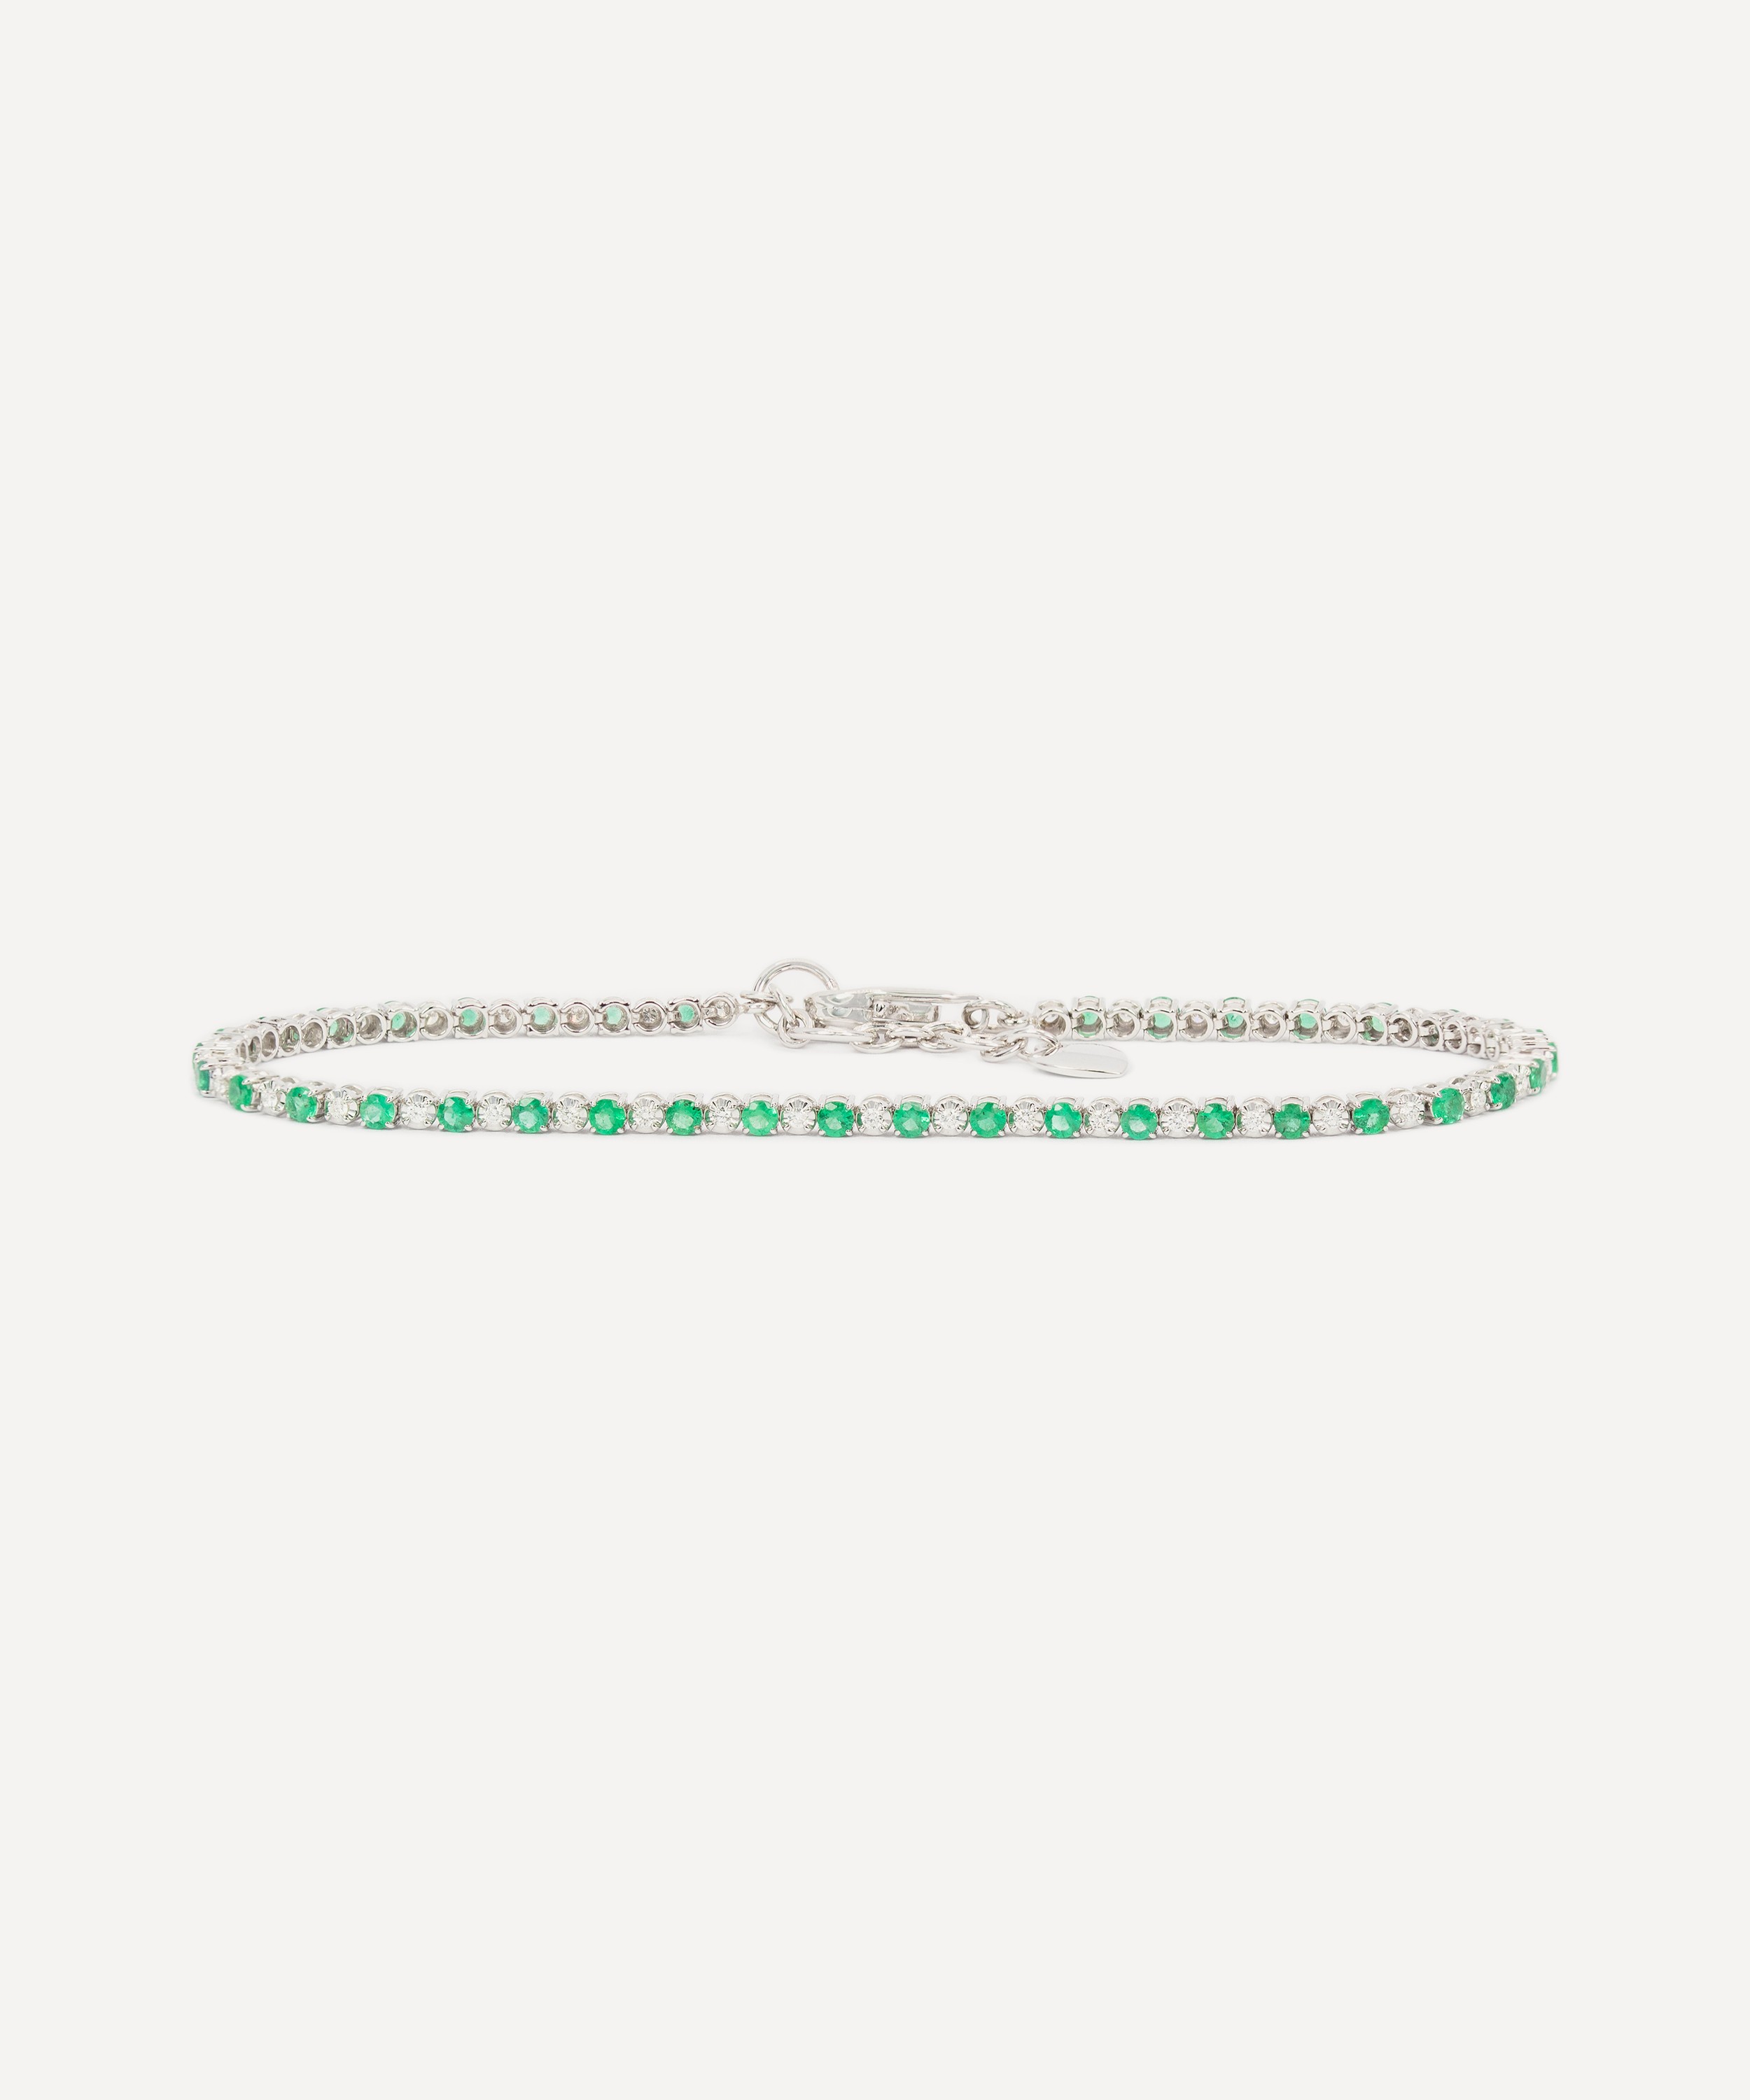 Kojis - 18ct White Gold Emerald and Diamond Tennis Bracelet